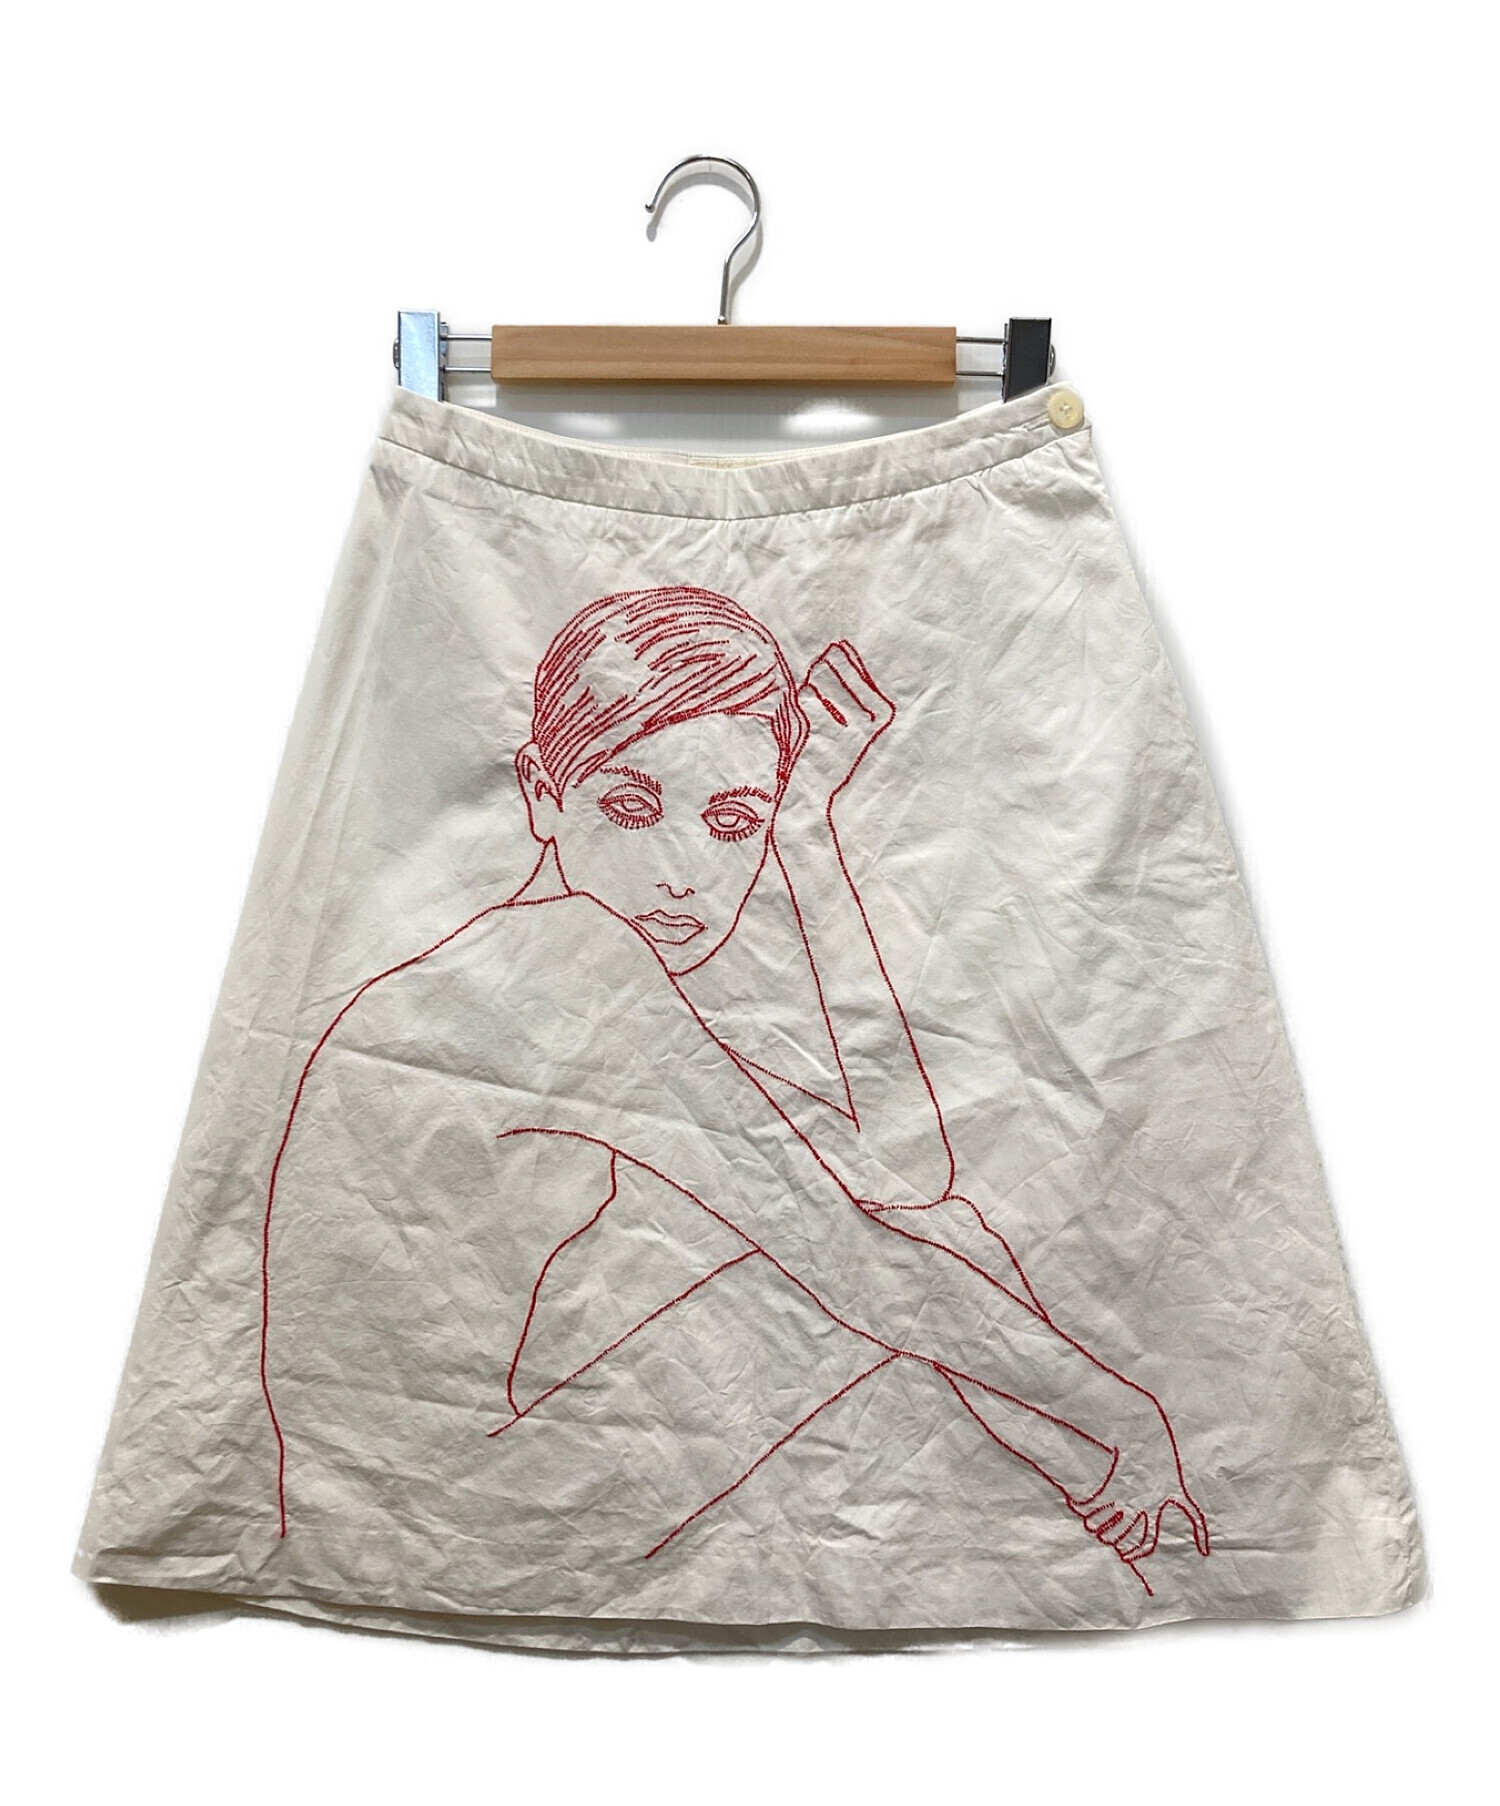 DIRK VAN SAENE (ダークヴァンセーヌ) 刺繍スカート ホワイト サイズ:38